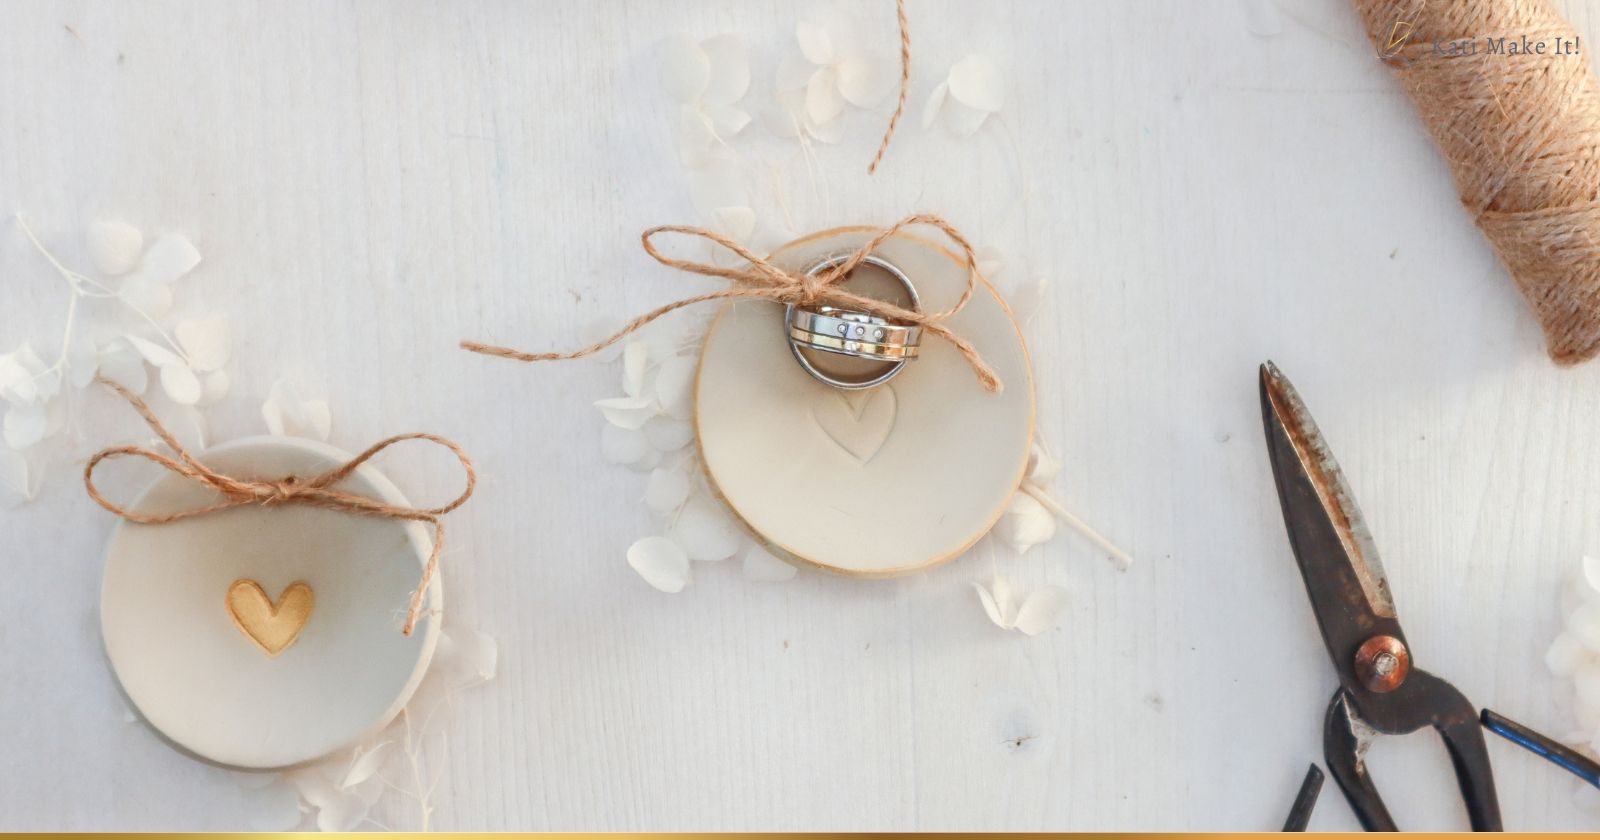 DIY-Anleitung: Ringschale für die Hochzeit einfach selber machen - langlebige Alternative zum Ringkissen und tolle Geschenkidee von Trauzeugin für die Braut.